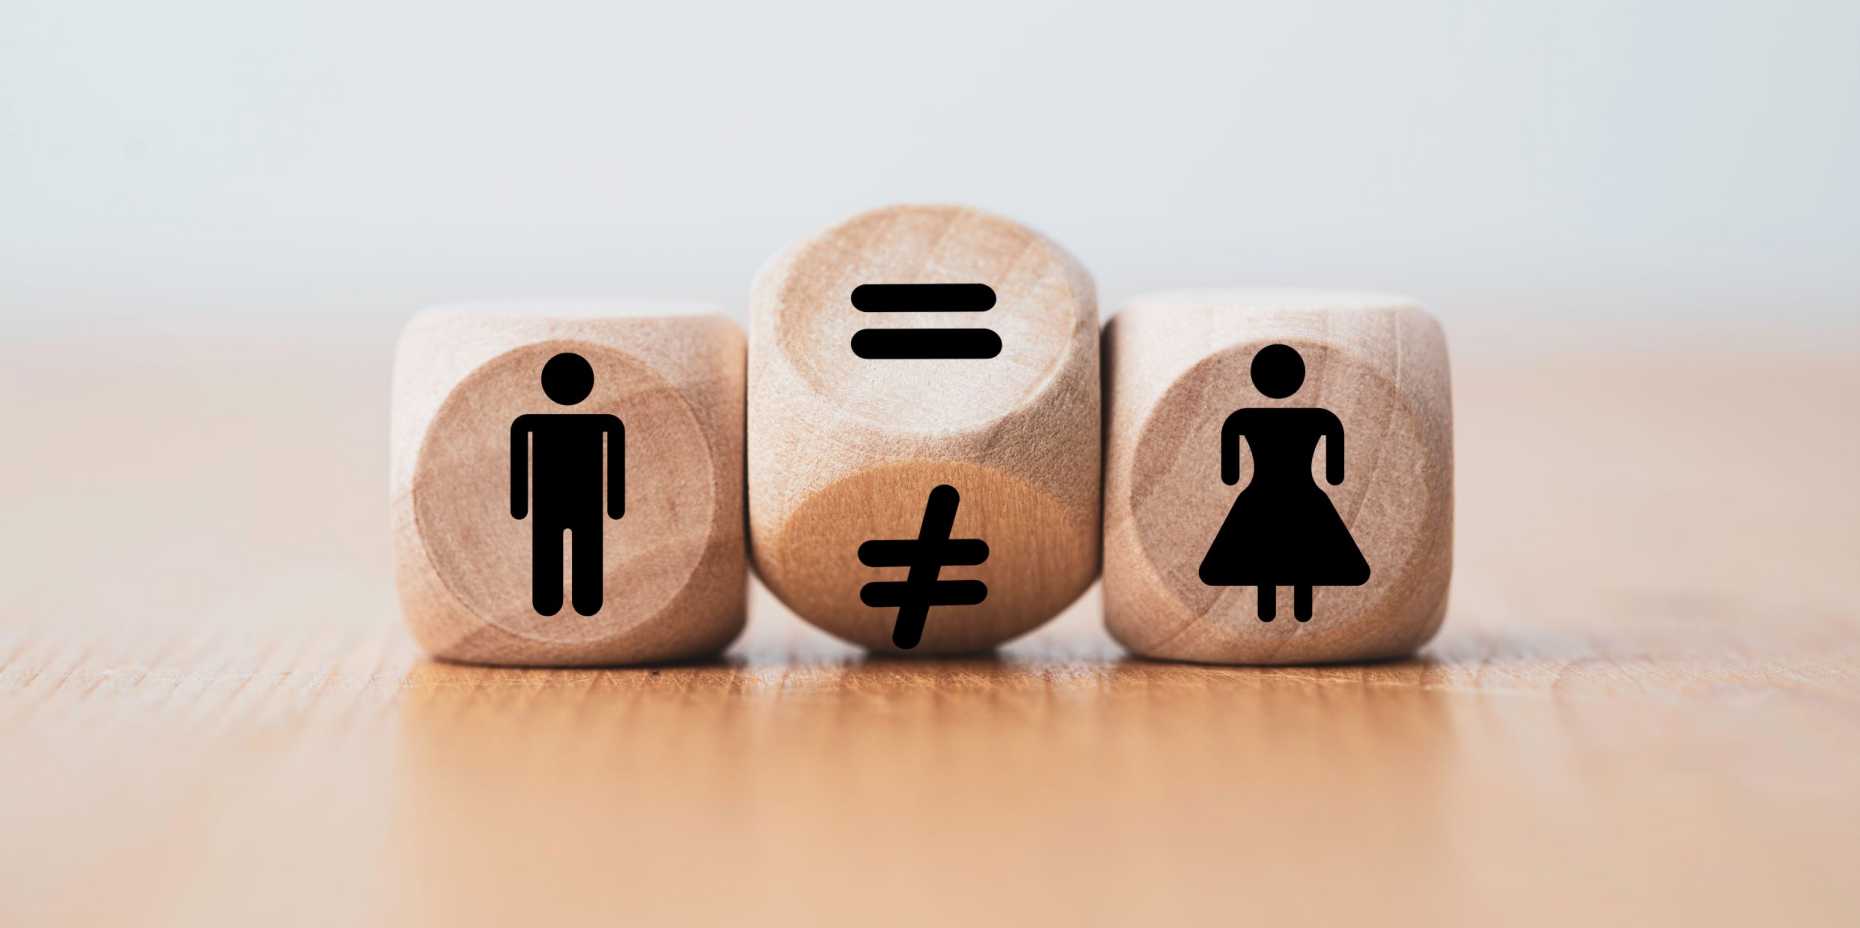 Drei Würfel, die von links nach rechts einen Mann, ein Gleichheitszeichen und eine Frau zeigen.